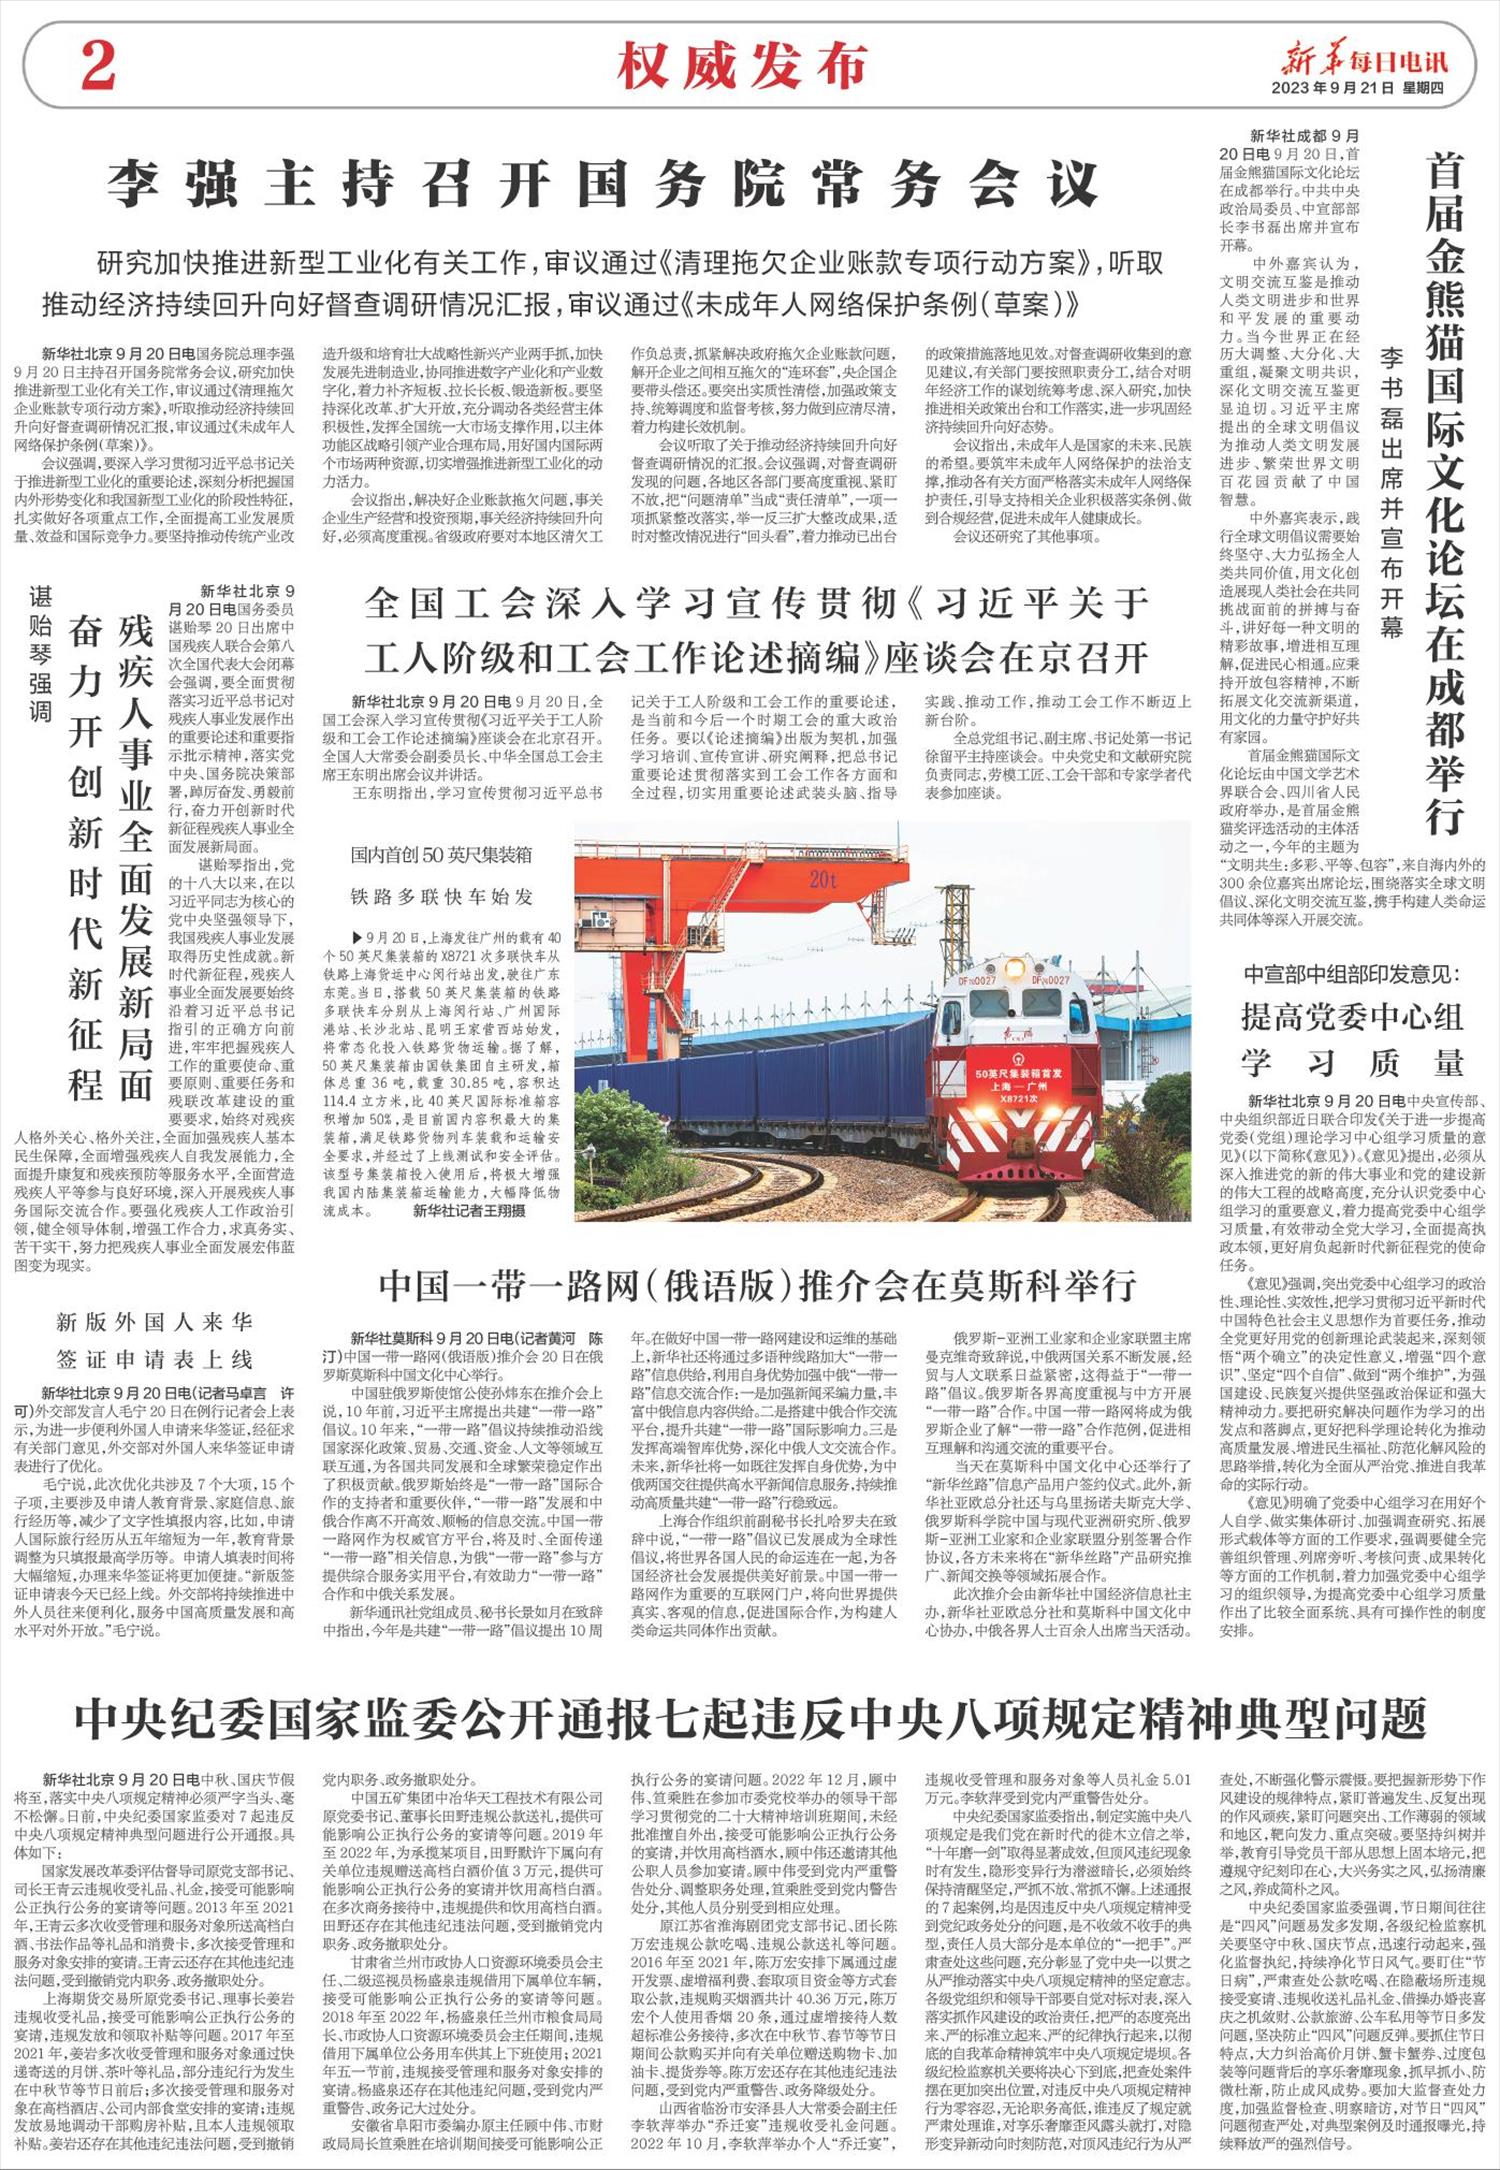 新华每日电讯-微报纸-2023年09月21日